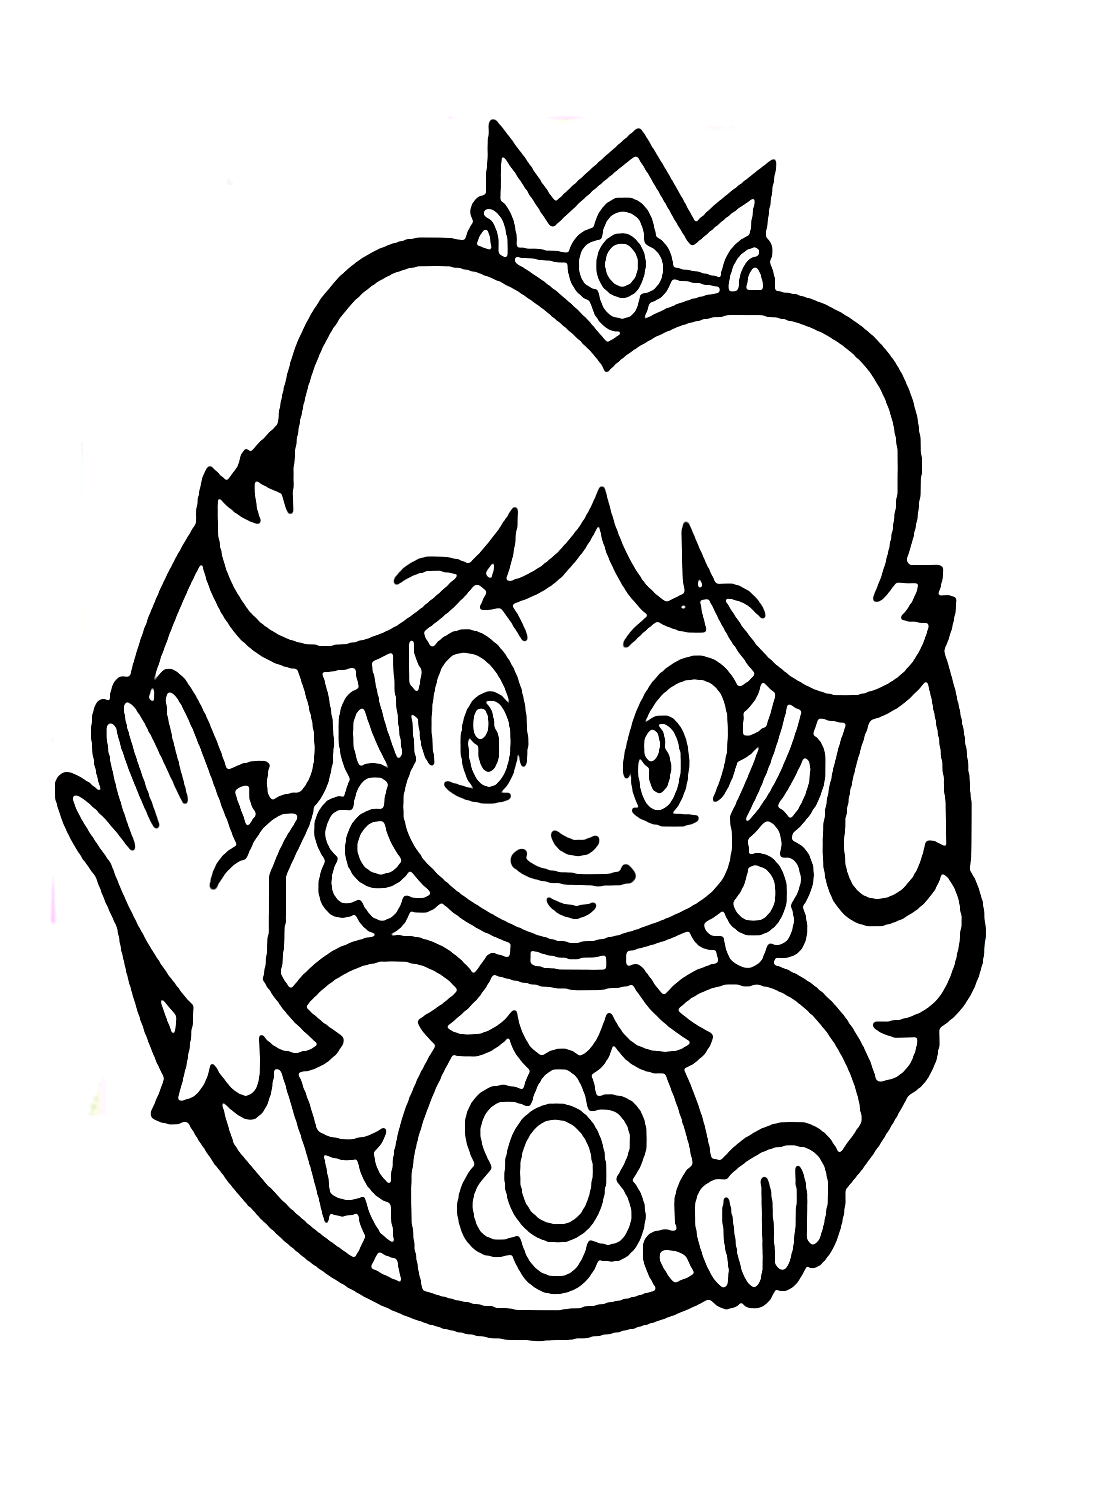 Princesa Daisy Super Mario de Princesa Daisy